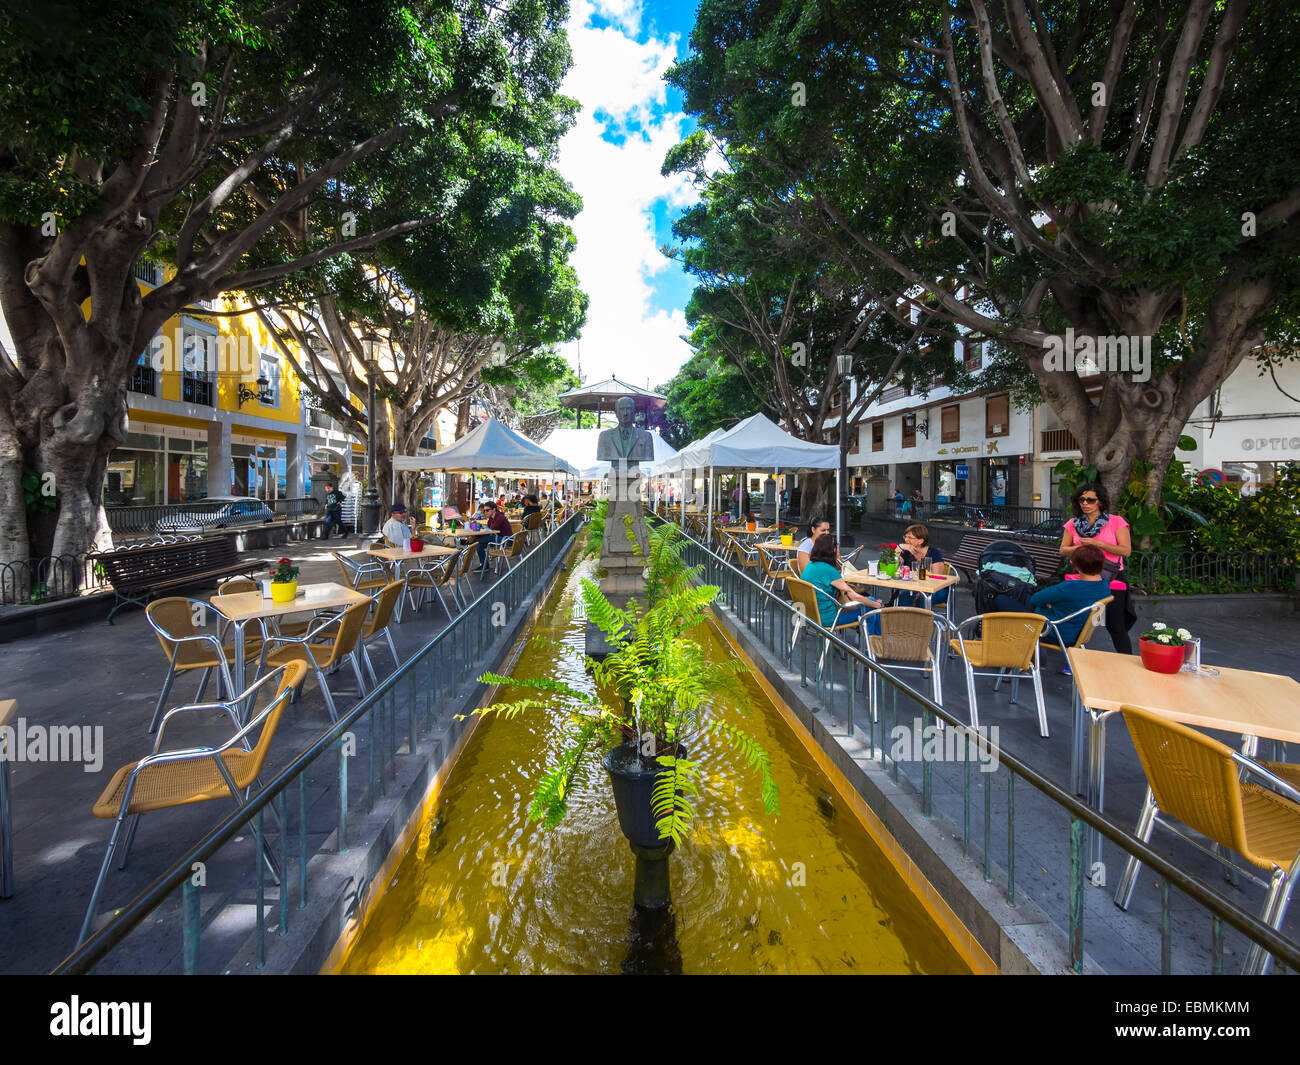 Restaurants and cafes, Plaza de La Alameda, Santa Cruz de La Palma, La Palma, Canary Islands, Spain Stock Photo